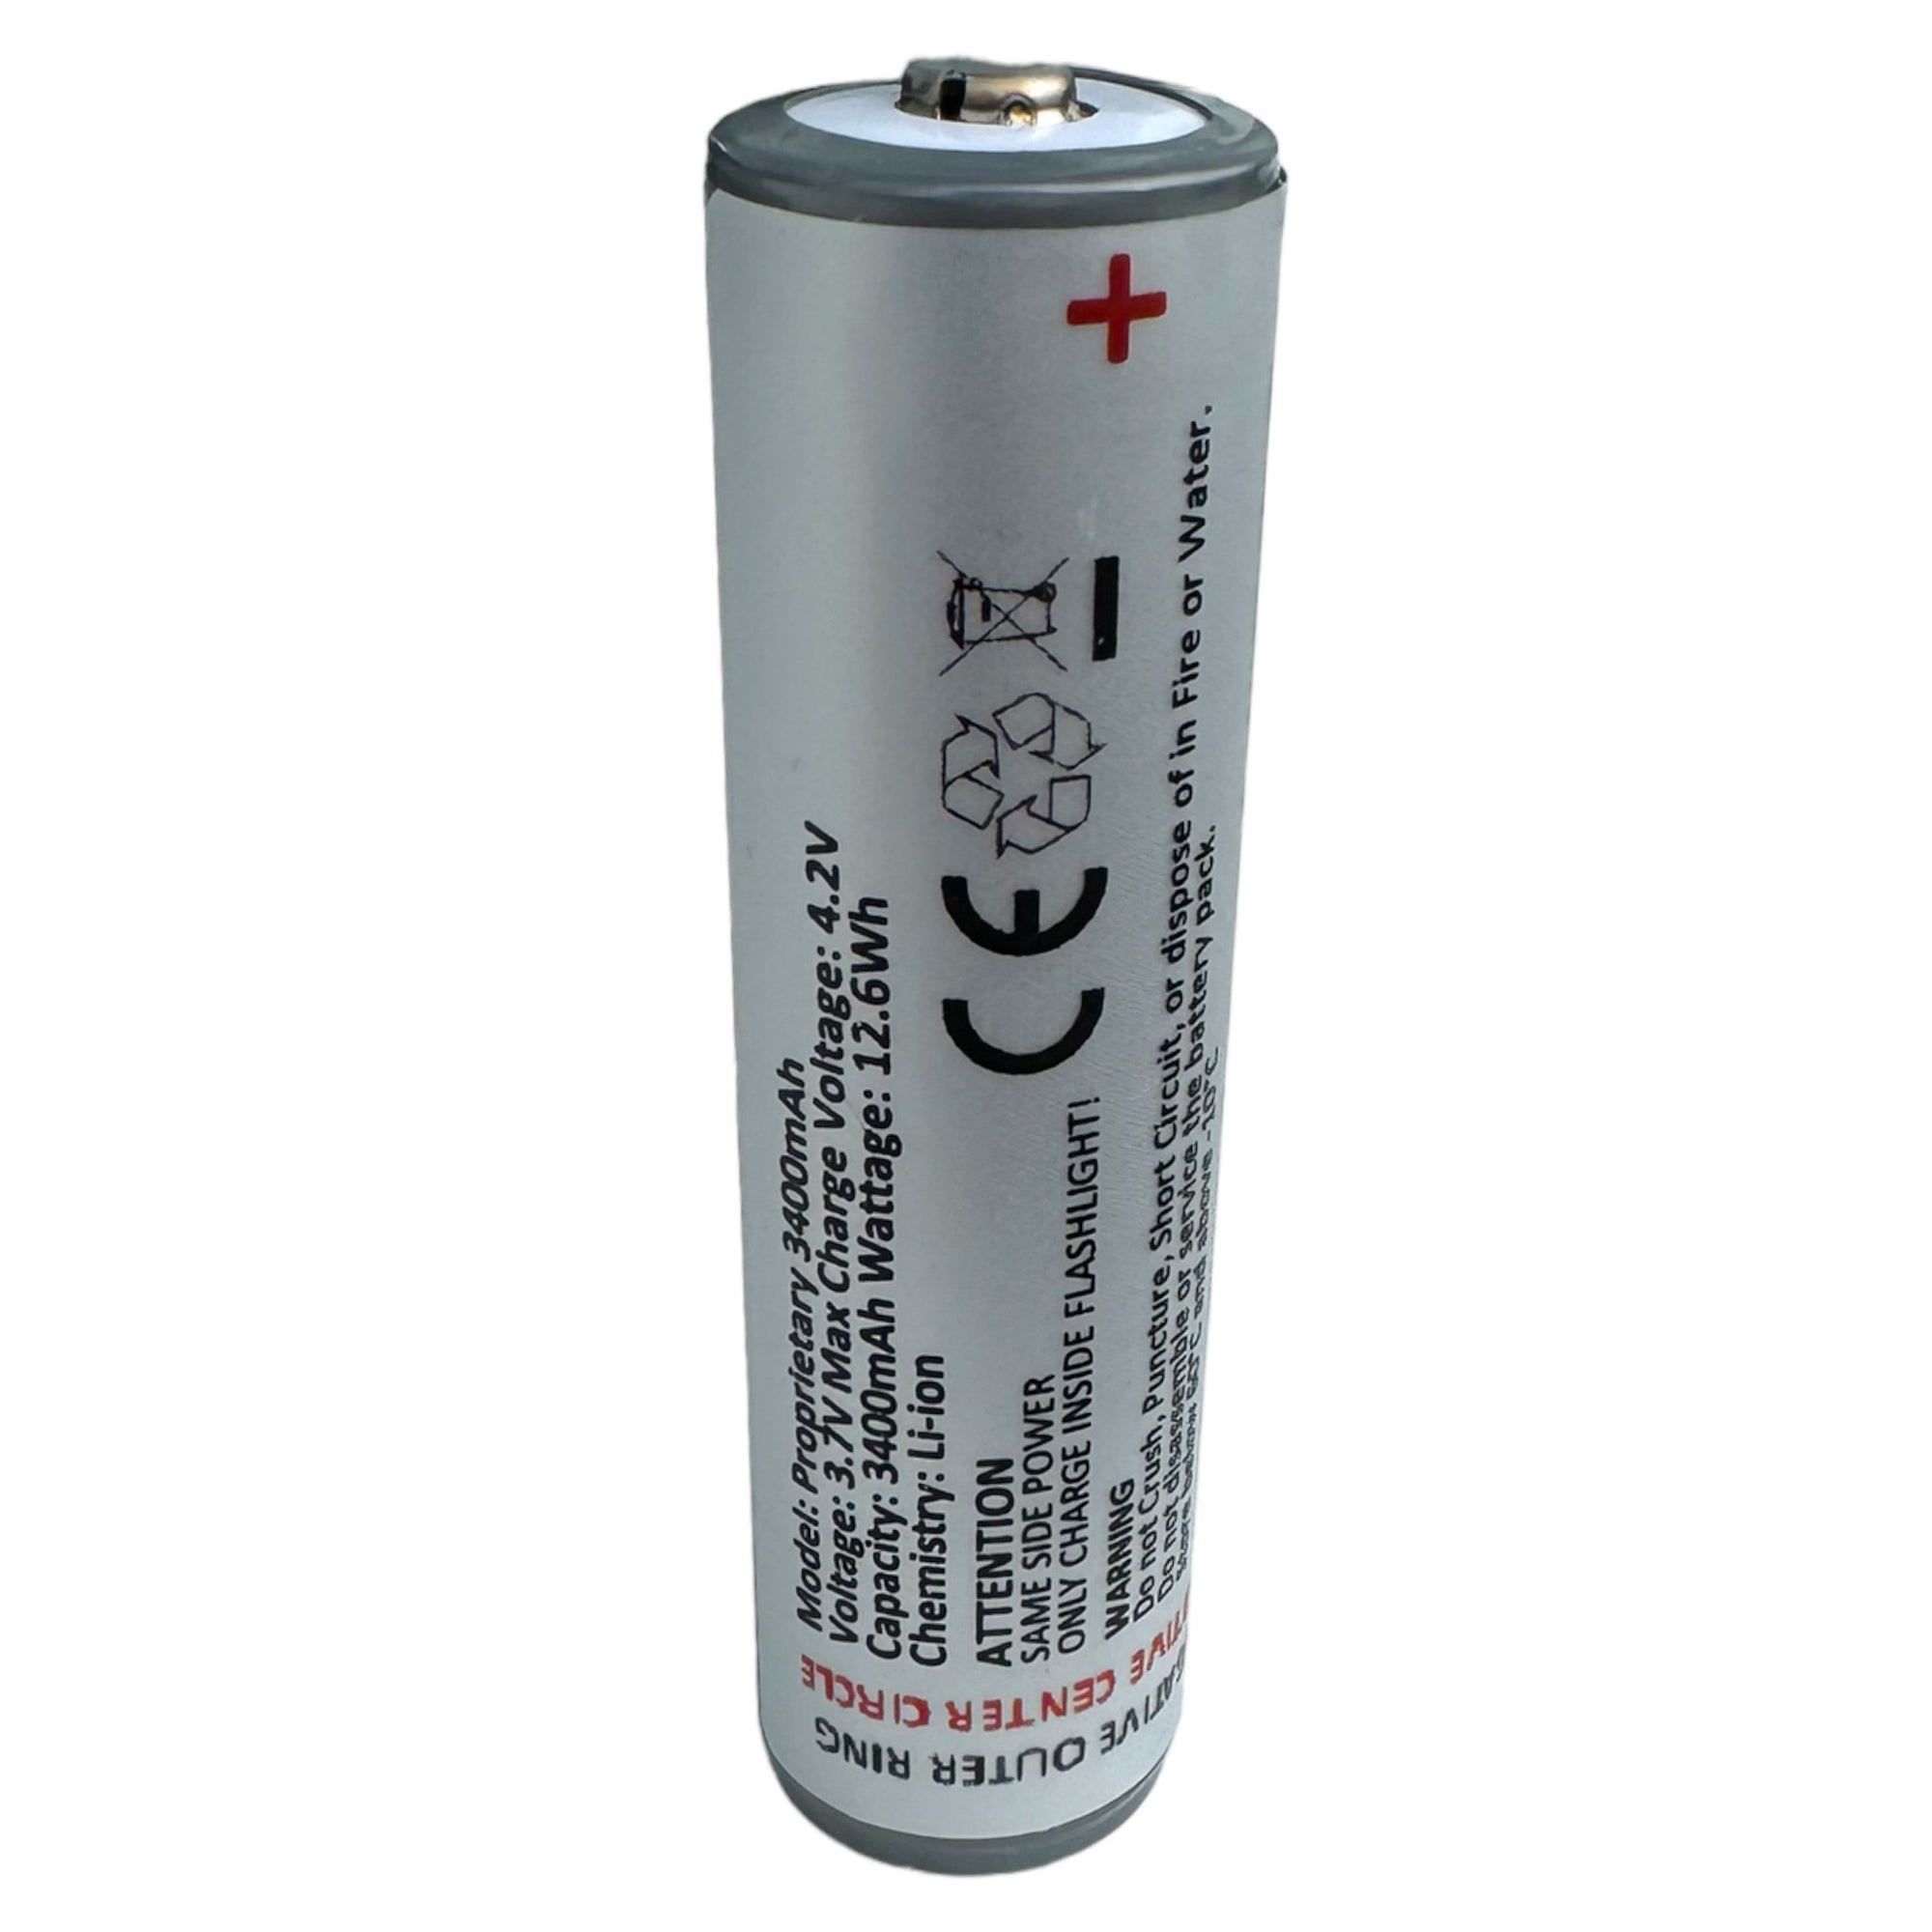 NEBO replacement battery 18650 Li-ion